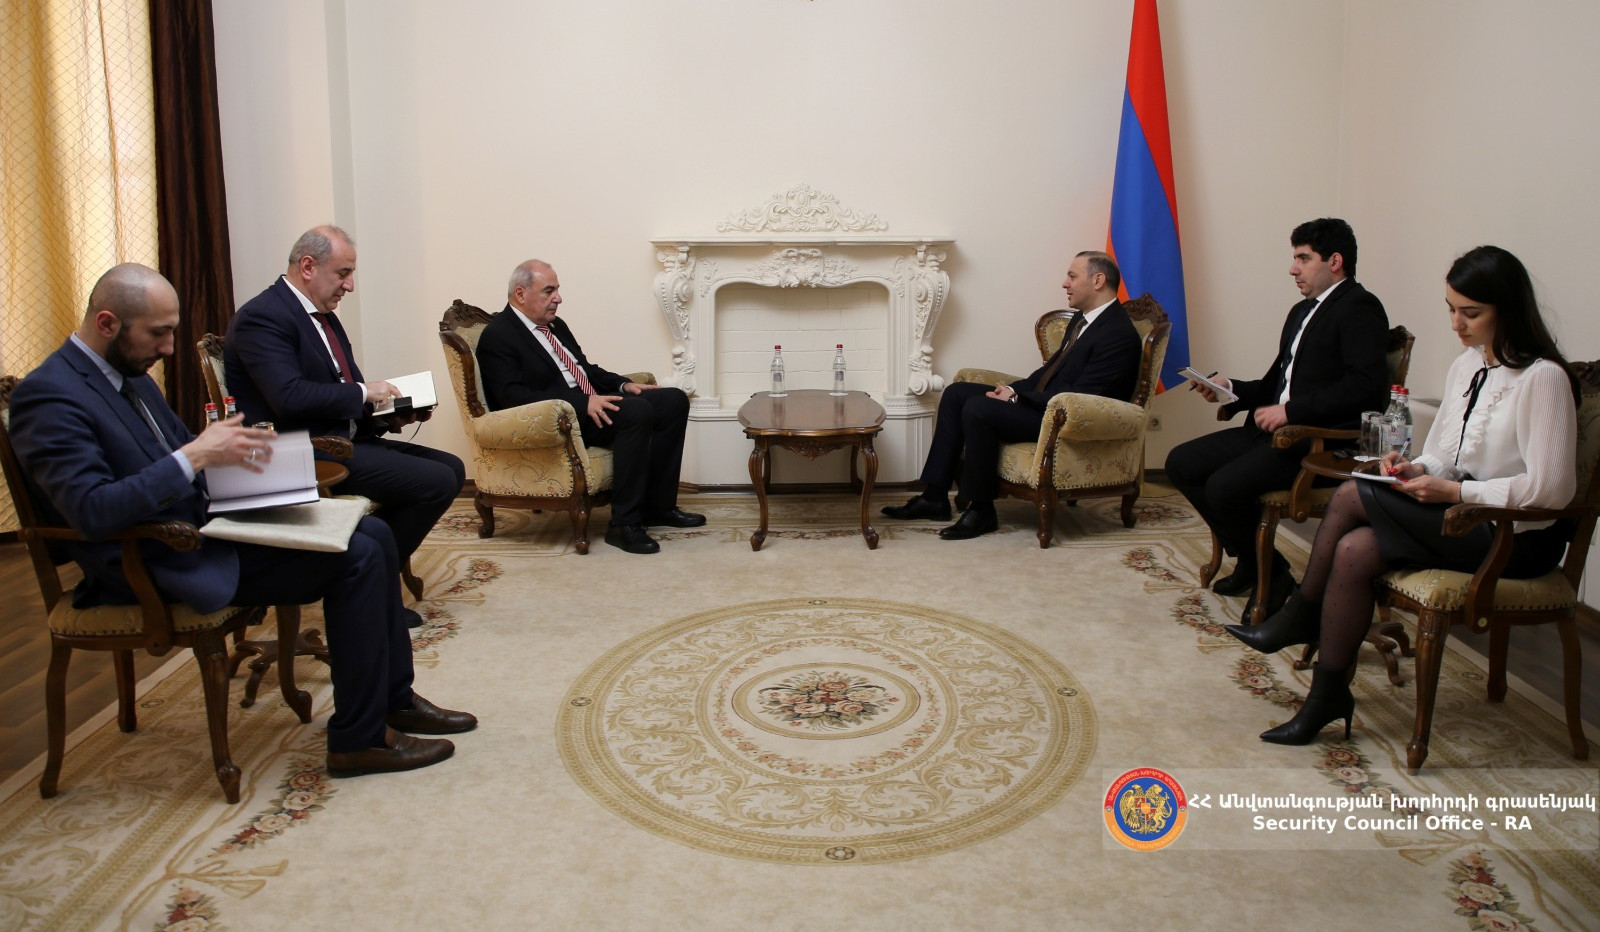 Քննարկվել են տնտեսական և հումանիտար ոլորտներում հայ-վրացական համագործակցության հեռանկարները